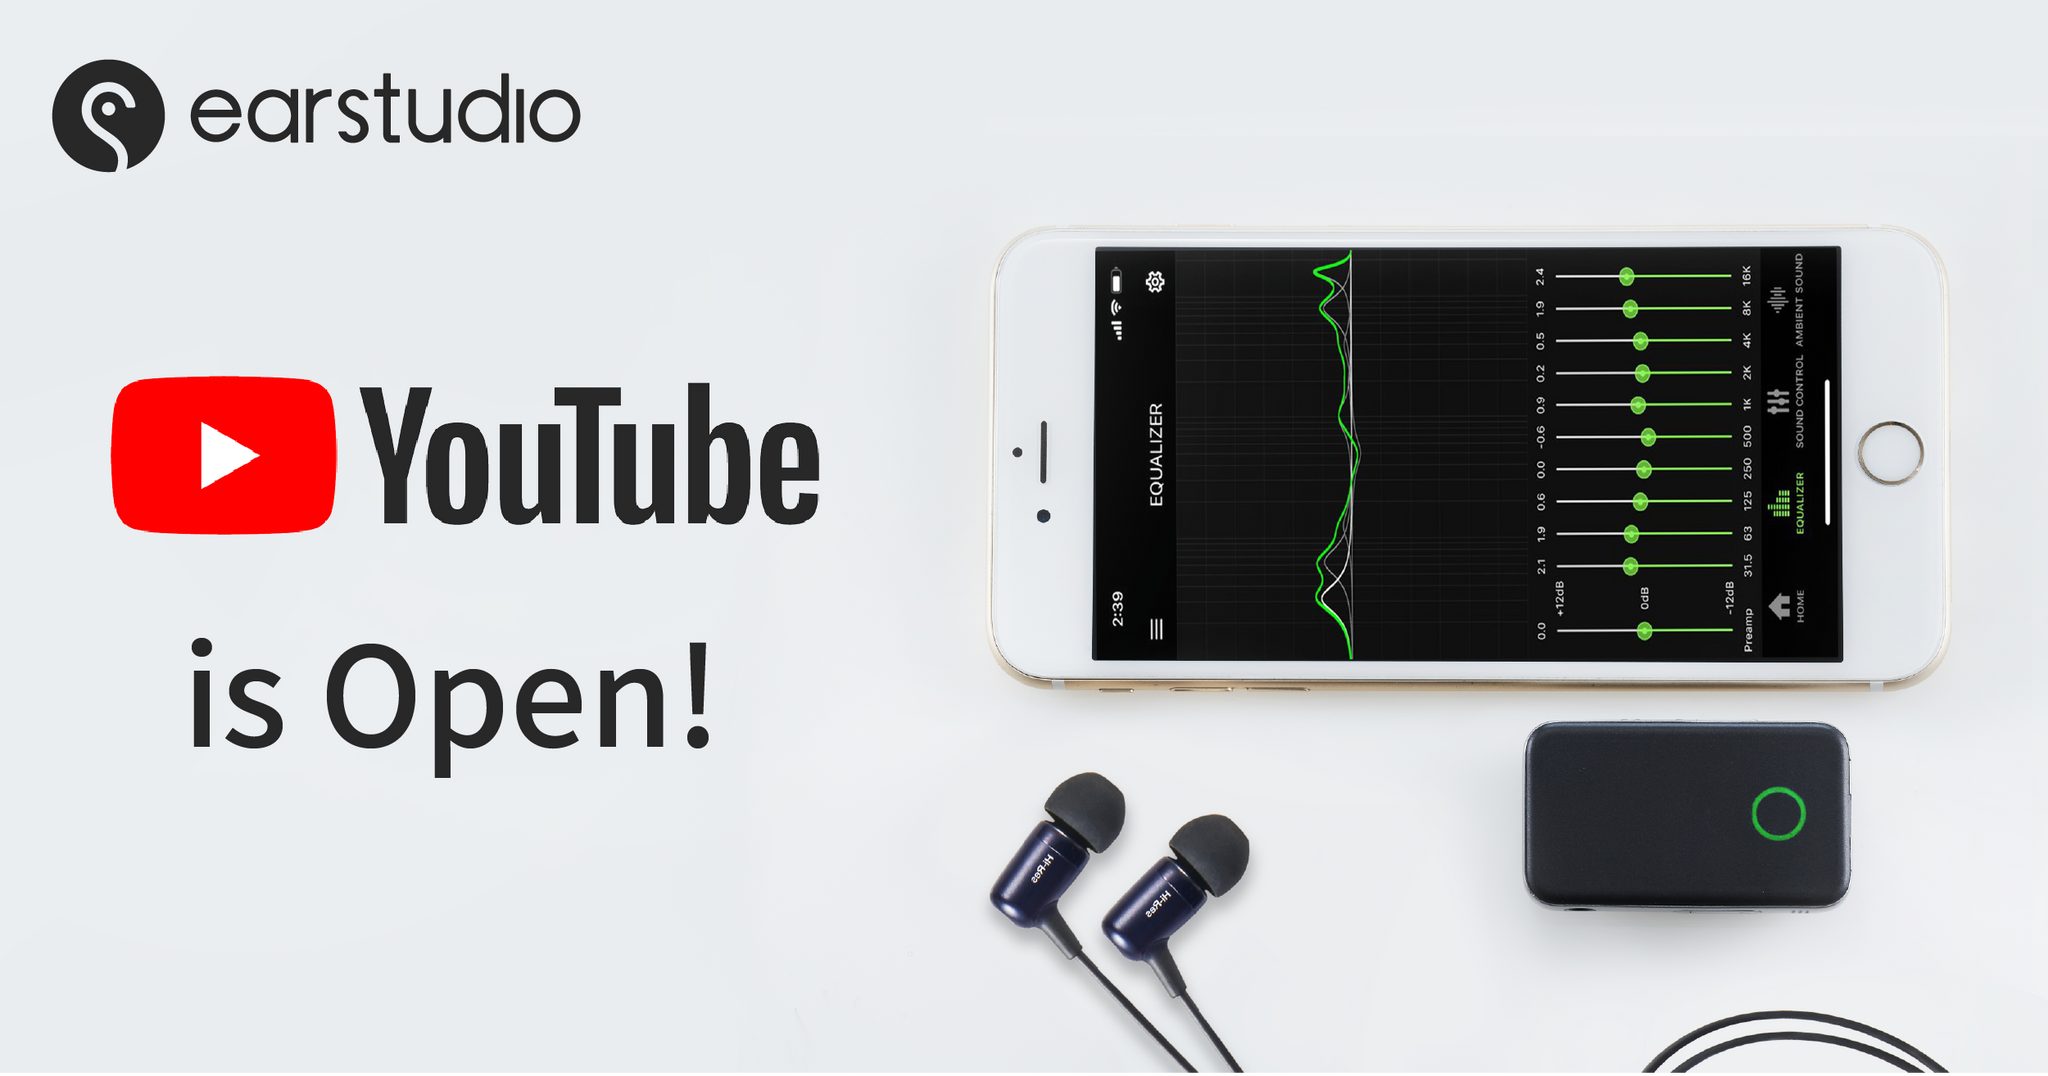 Official Earstudio Youtube Channel is open!